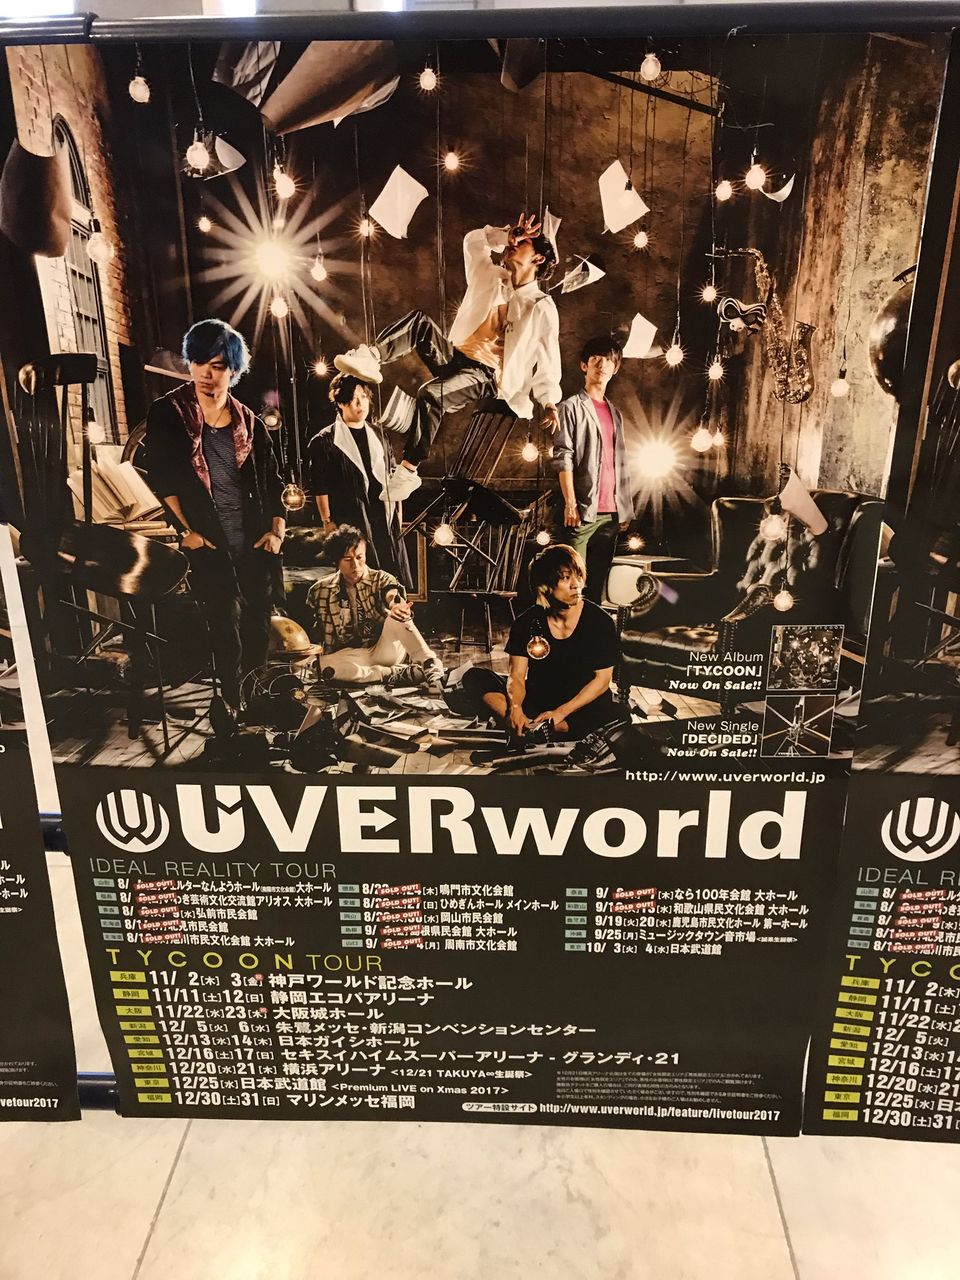 ネタバレ注意 Uverworld ライブ Idel Realtyidel Realty Tour 愛媛公演2日目 セットリスト とtwitterの反応 J Pop Now